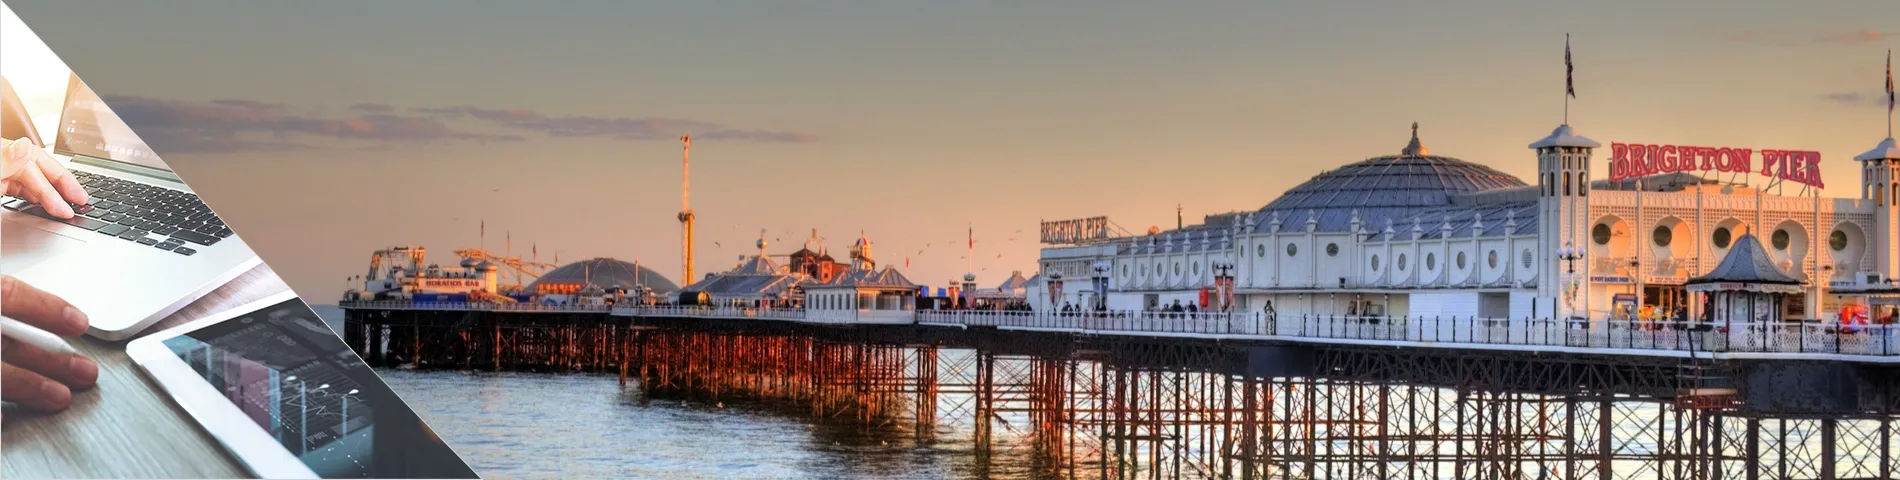 Brighton - Englisch & Digitale Medien